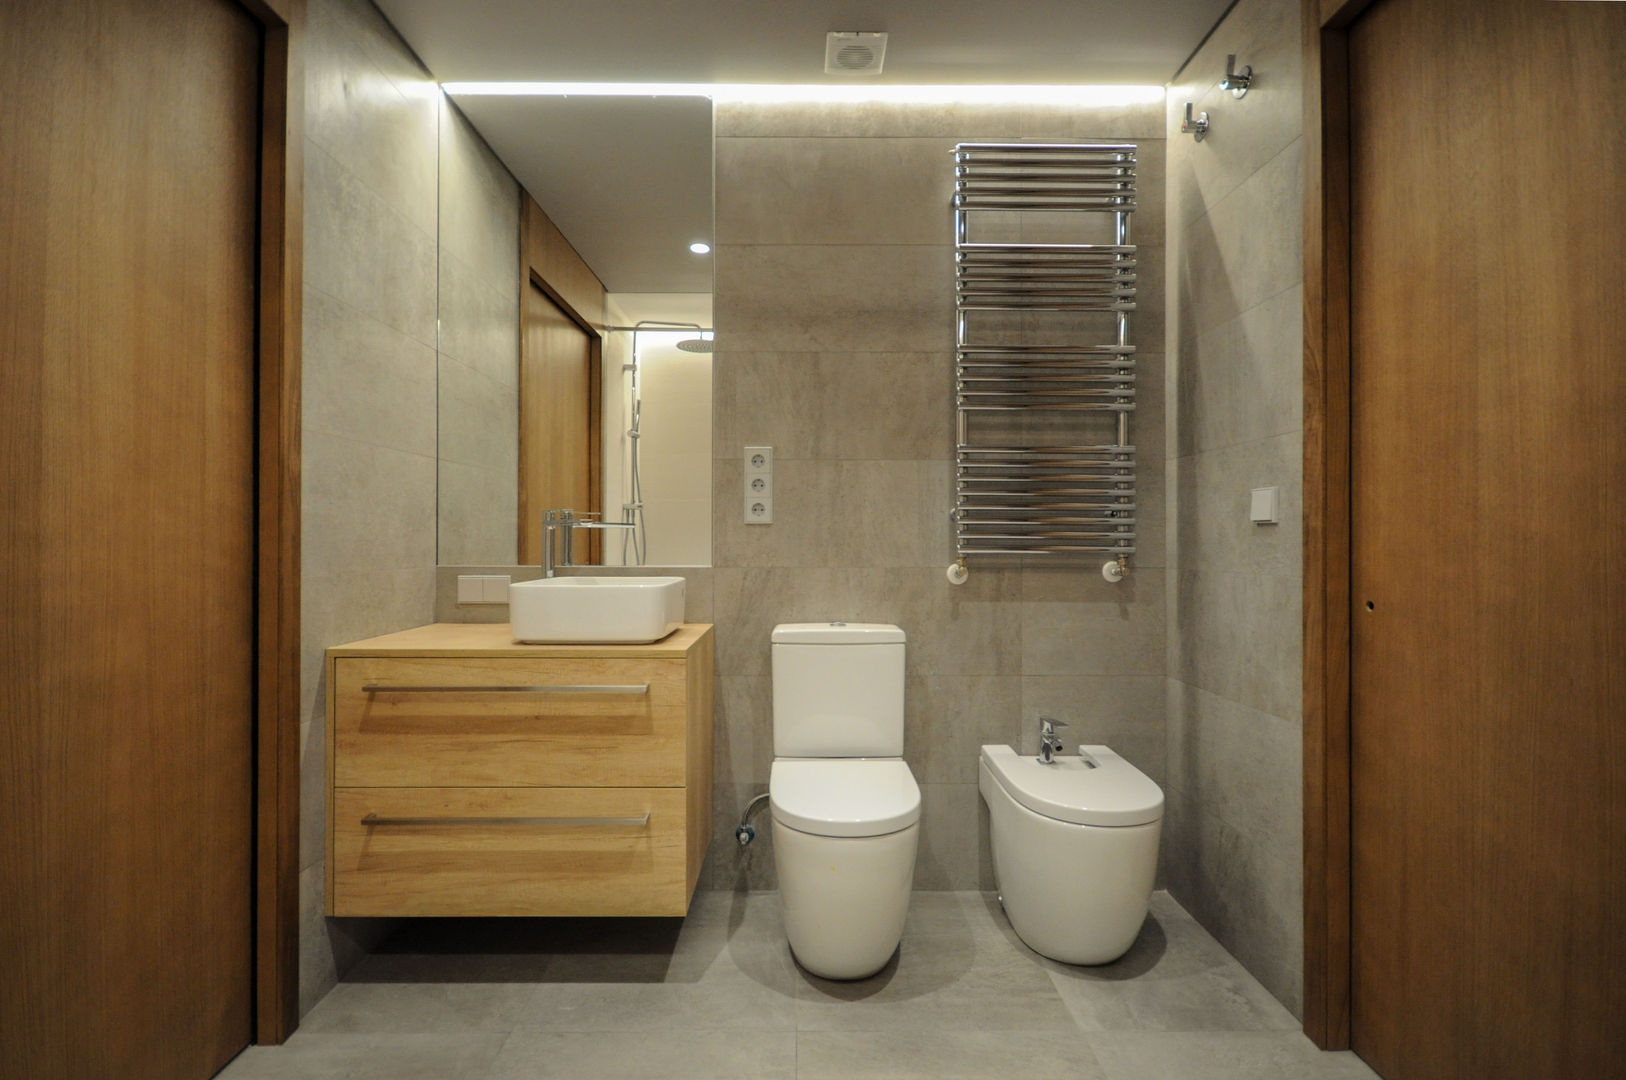 Reforma integral de vivienda, DoA diseño original, arquitectura DoA diseño original, arquitectura ห้องน้ำ